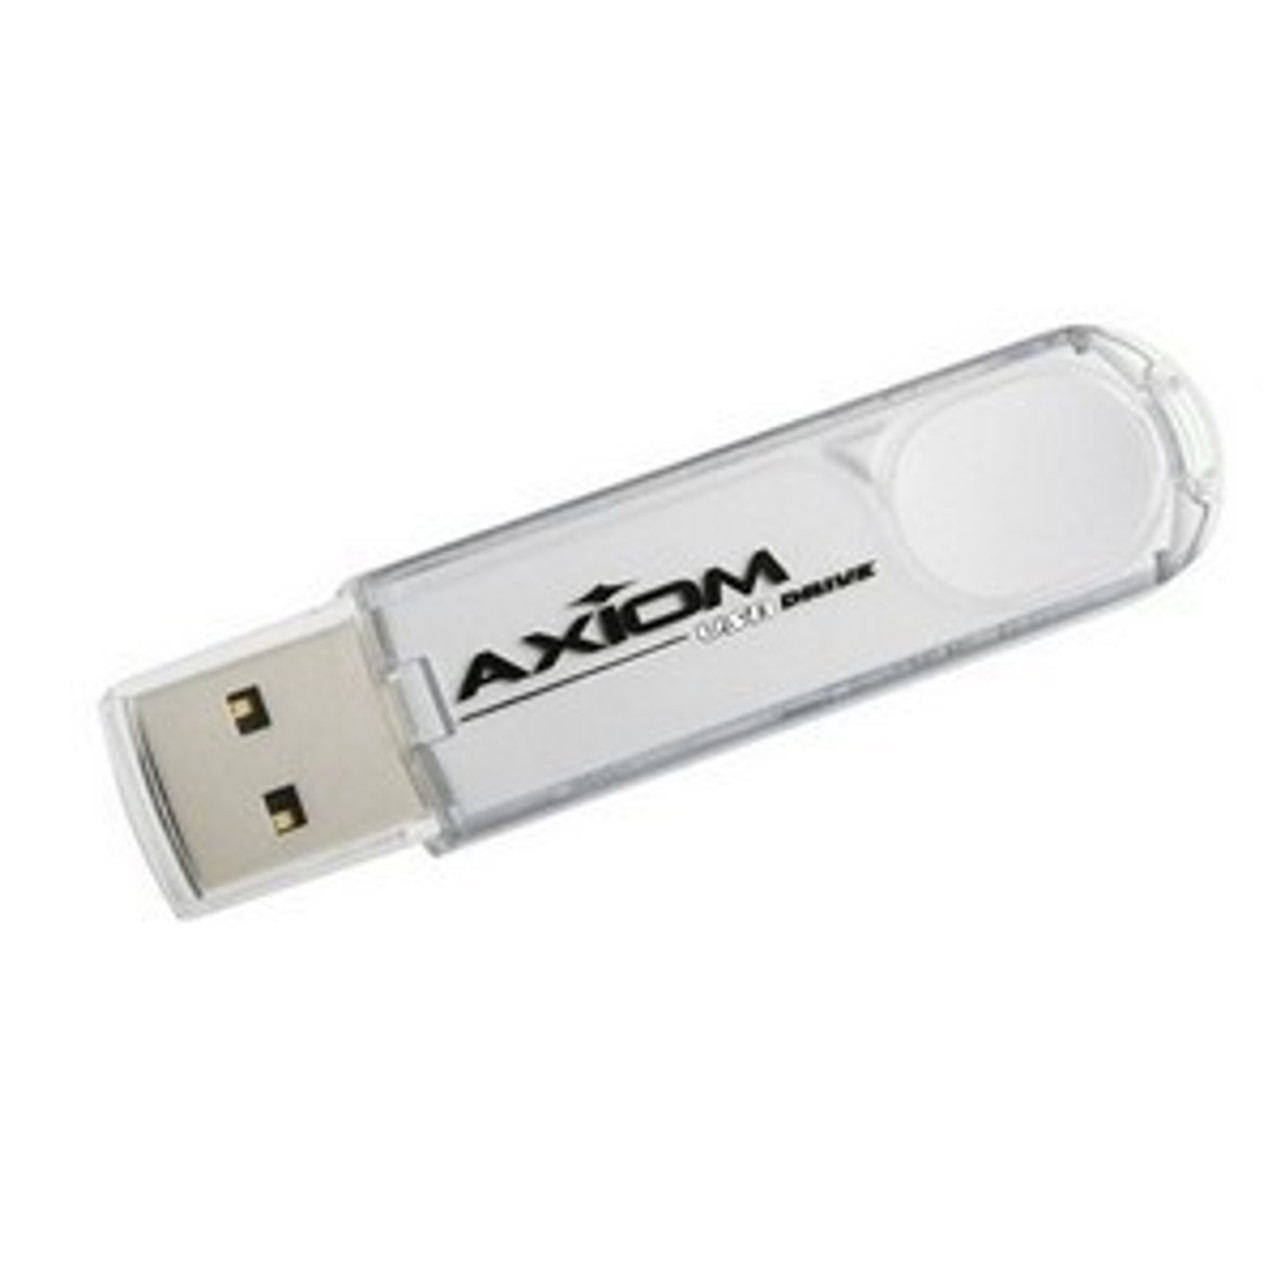 USBFD2/4GB-SCP - Axiom USBFD2/4GB-SCP 4 GB USB Flash Drive - External